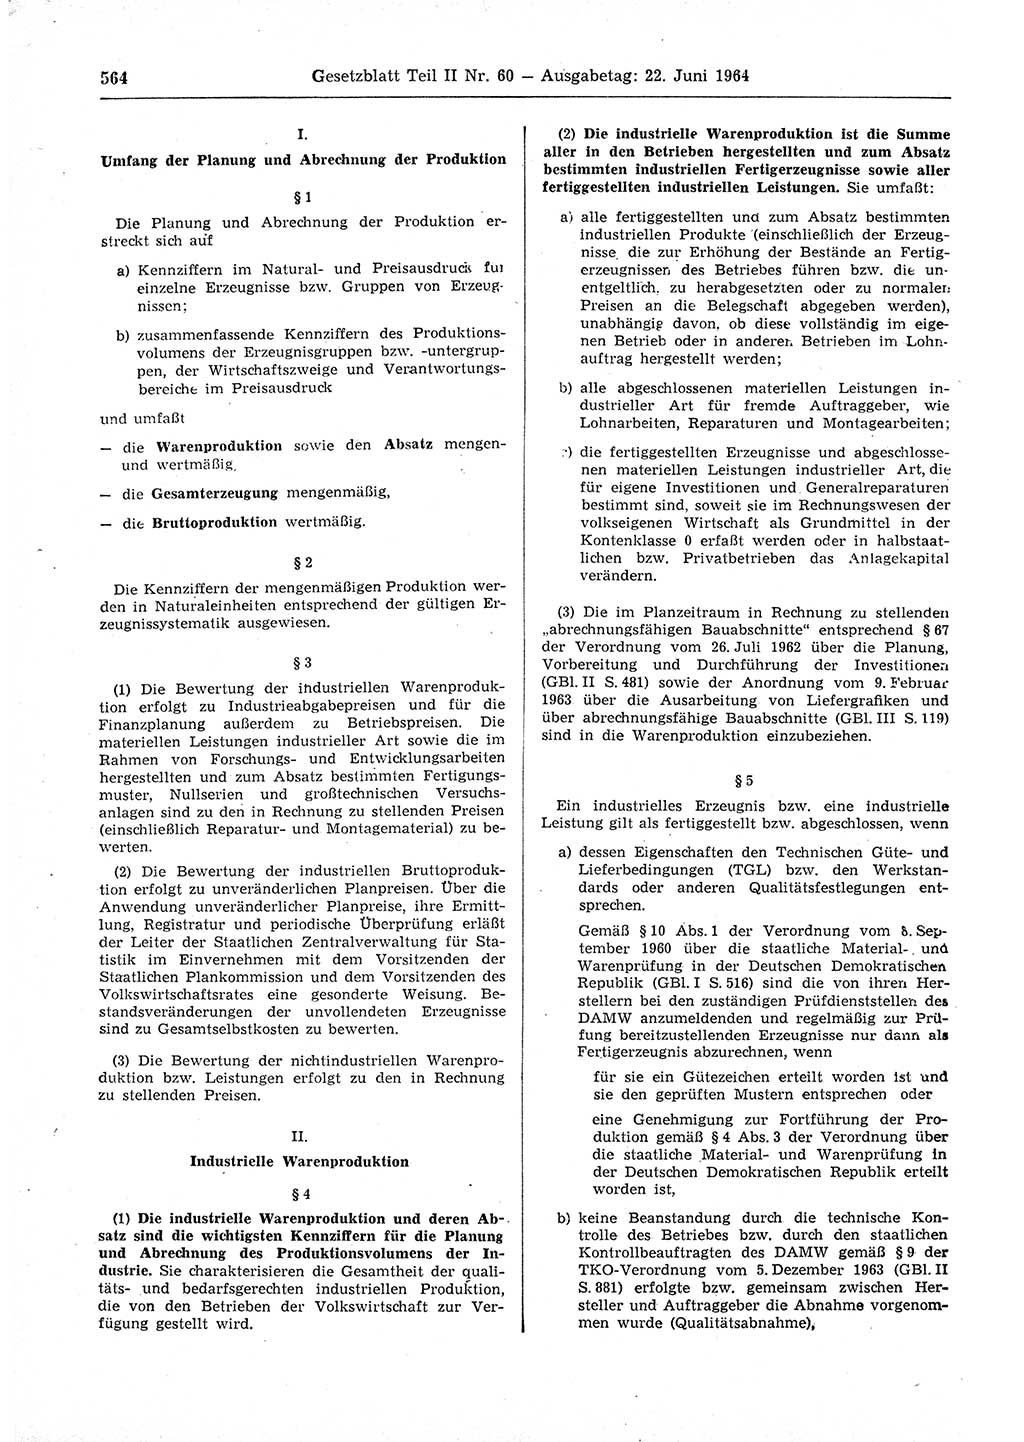 Gesetzblatt (GBl.) der Deutschen Demokratischen Republik (DDR) Teil ⅠⅠ 1964, Seite 564 (GBl. DDR ⅠⅠ 1964, S. 564)